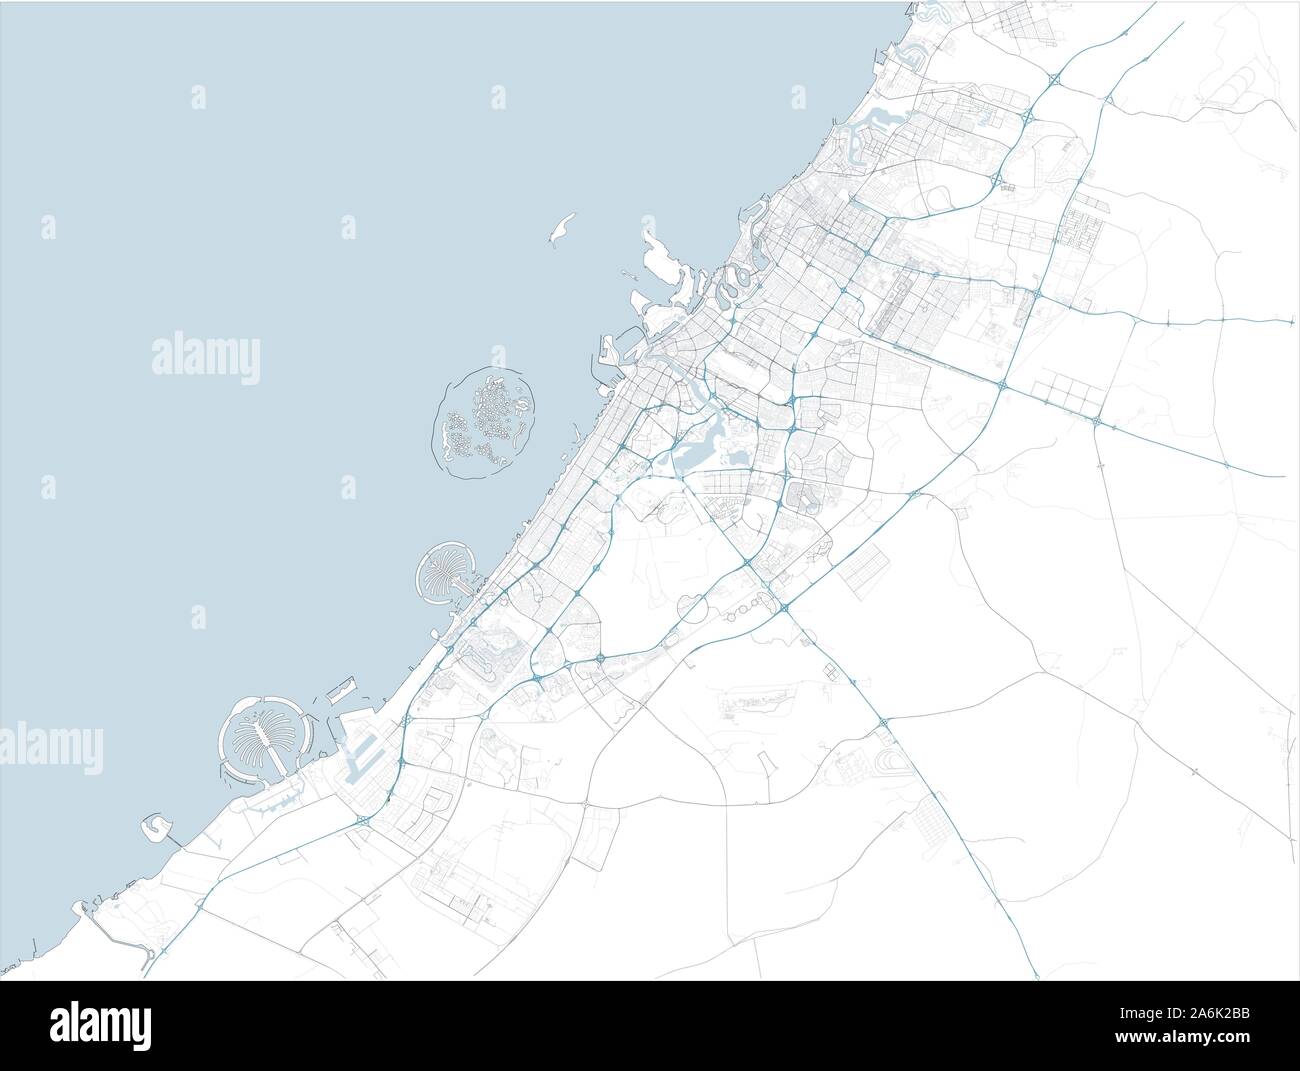 Carte Satellite de Dubaï et ses environs, aux Émirats arabes unis. La carte des routes, des rocades et autoroutes, rivières, lignes de chemin de fer. Carte de transport Illustration de Vecteur